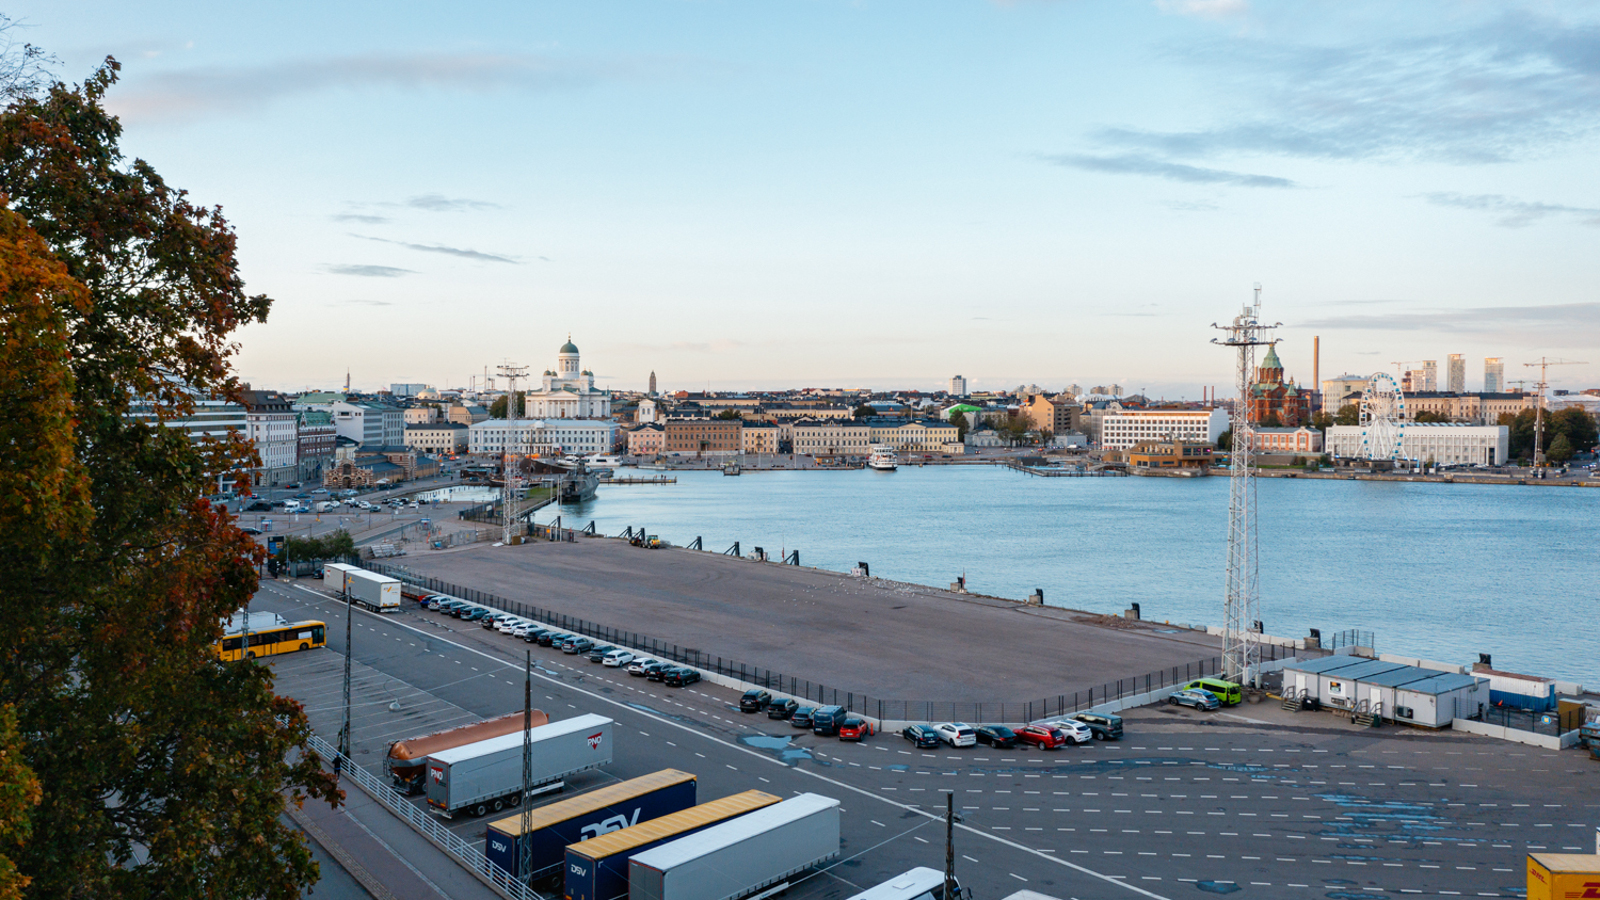 Kuvassa on Helsingin eteläsataman aluetta ja siinä näkyy tontti, jolle arkkitehtuuri- ja designmuseo tulee. Kuvassa näkyy kaukana tuomiokirkko ja kauppatoria sekä etualalla rekkoja parkissa. Taivas on sininen.